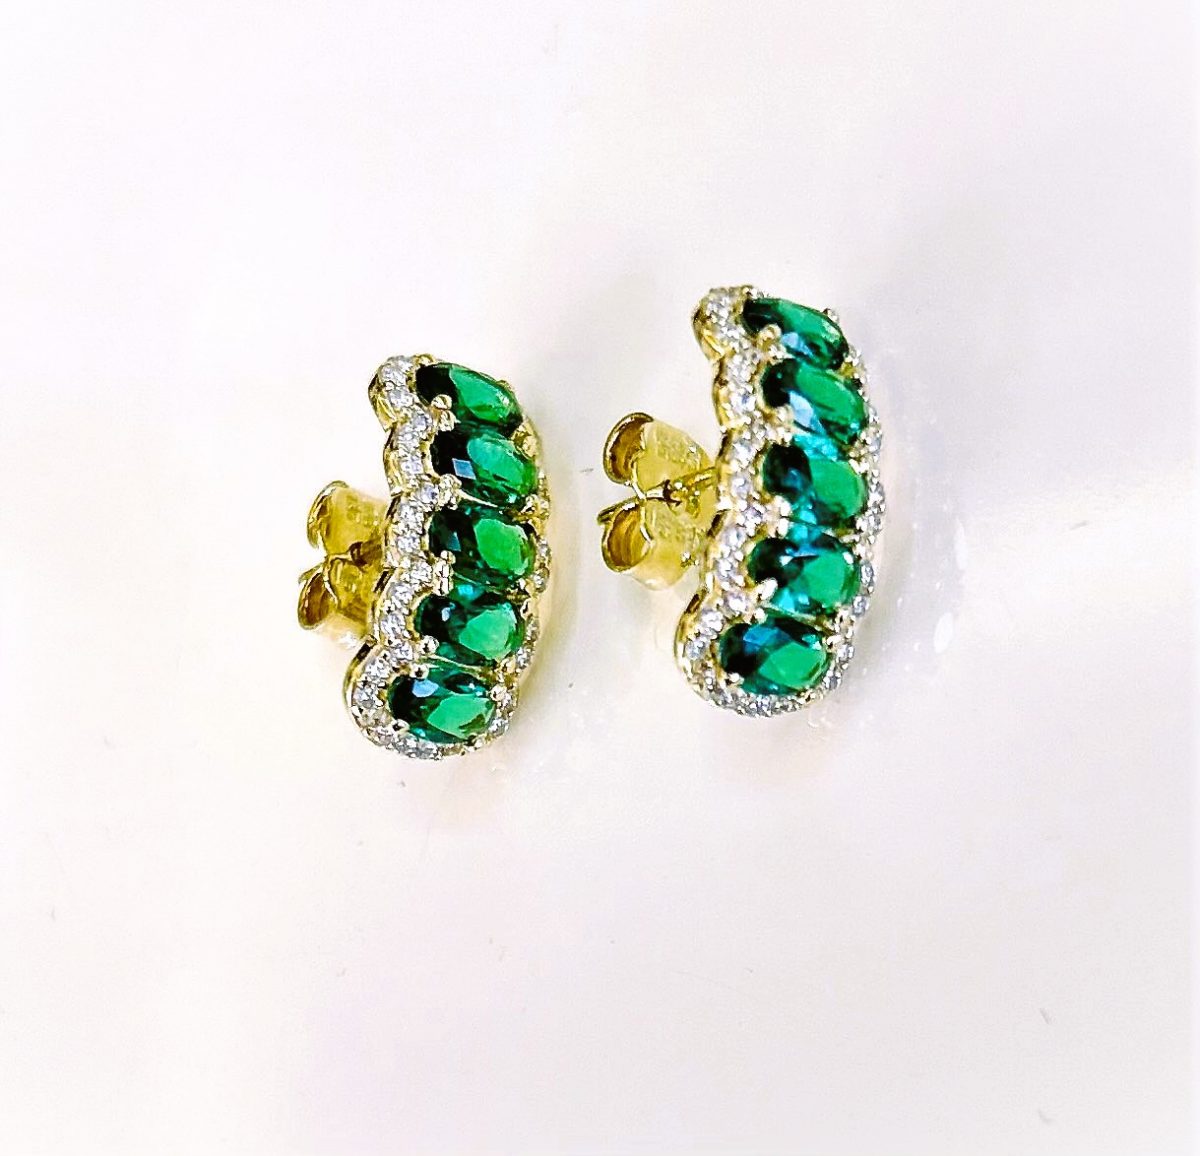 Women's earrings with green stones